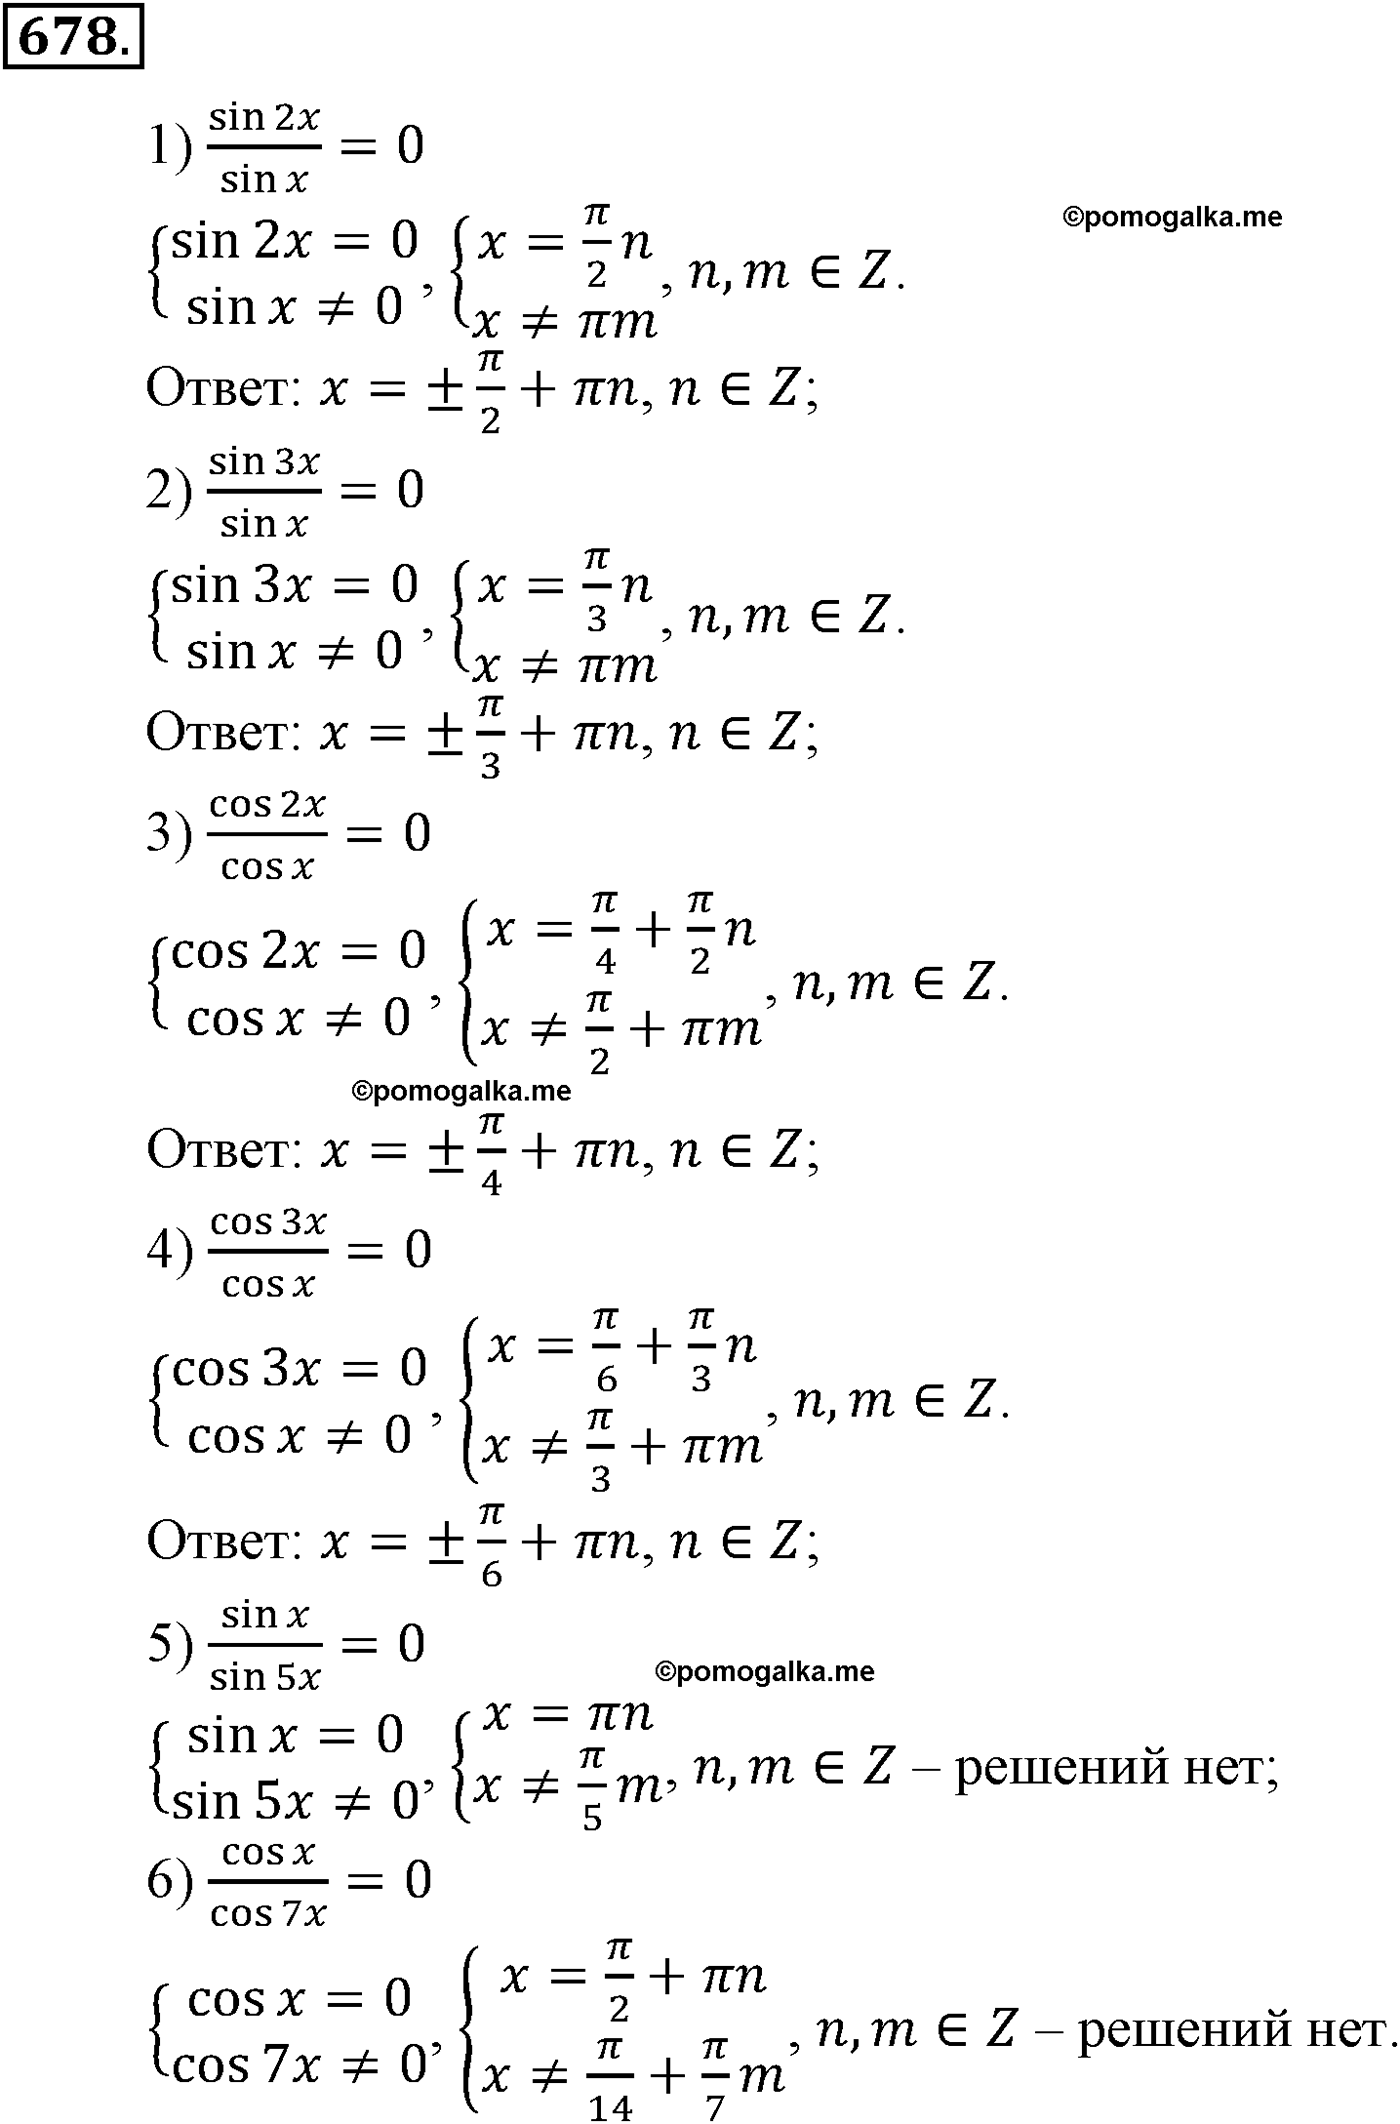 разбор задачи №678 по алгебре за 10-11 класс из учебника Алимова, Колягина